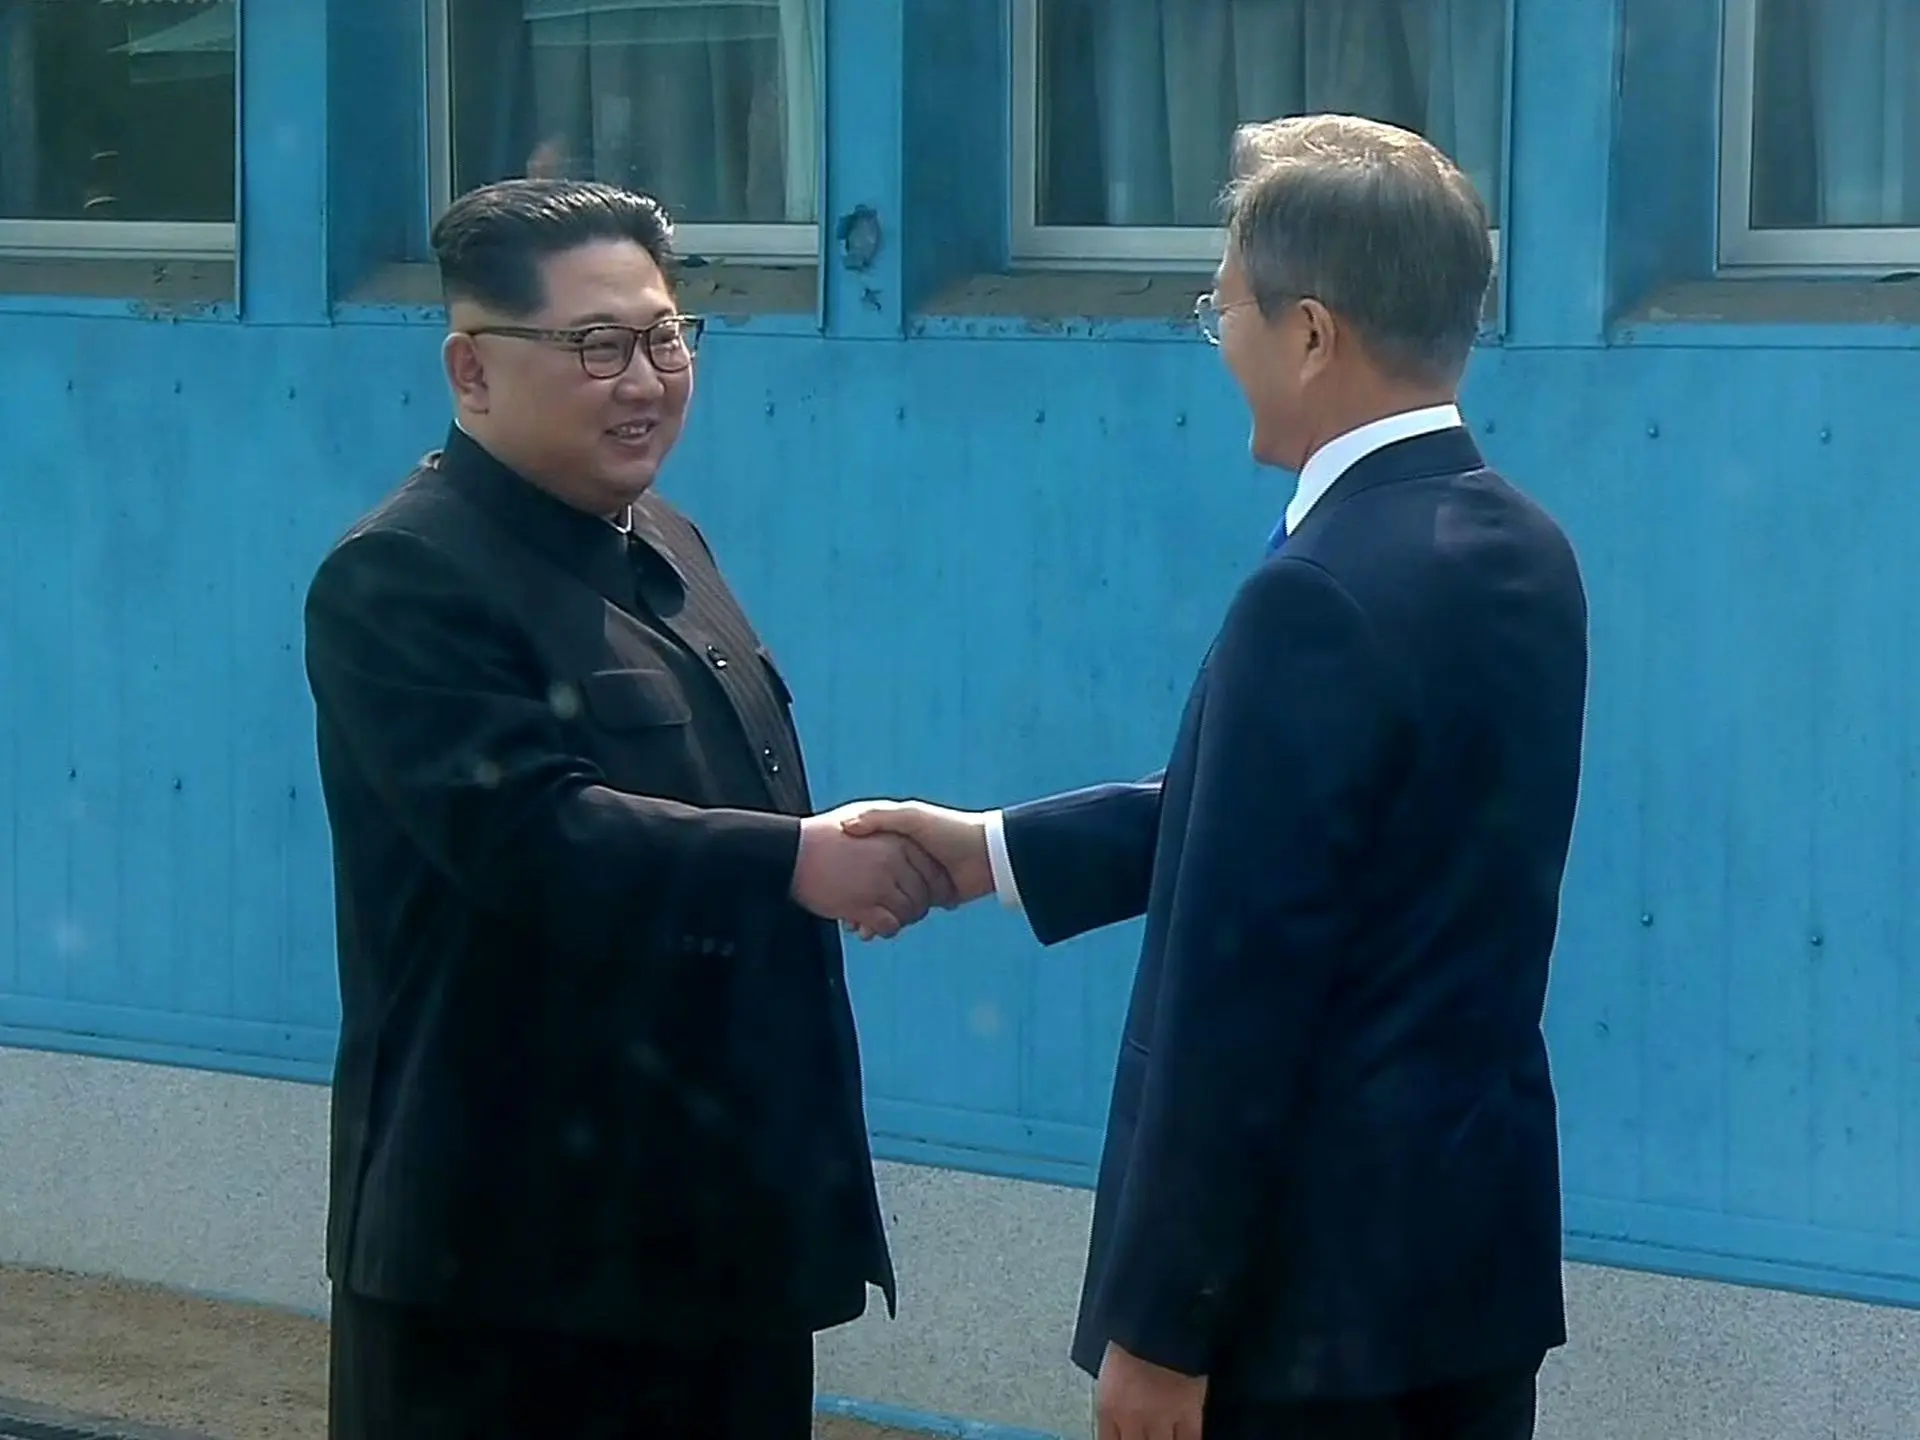 دیدار تاریخی رهبران دو کره